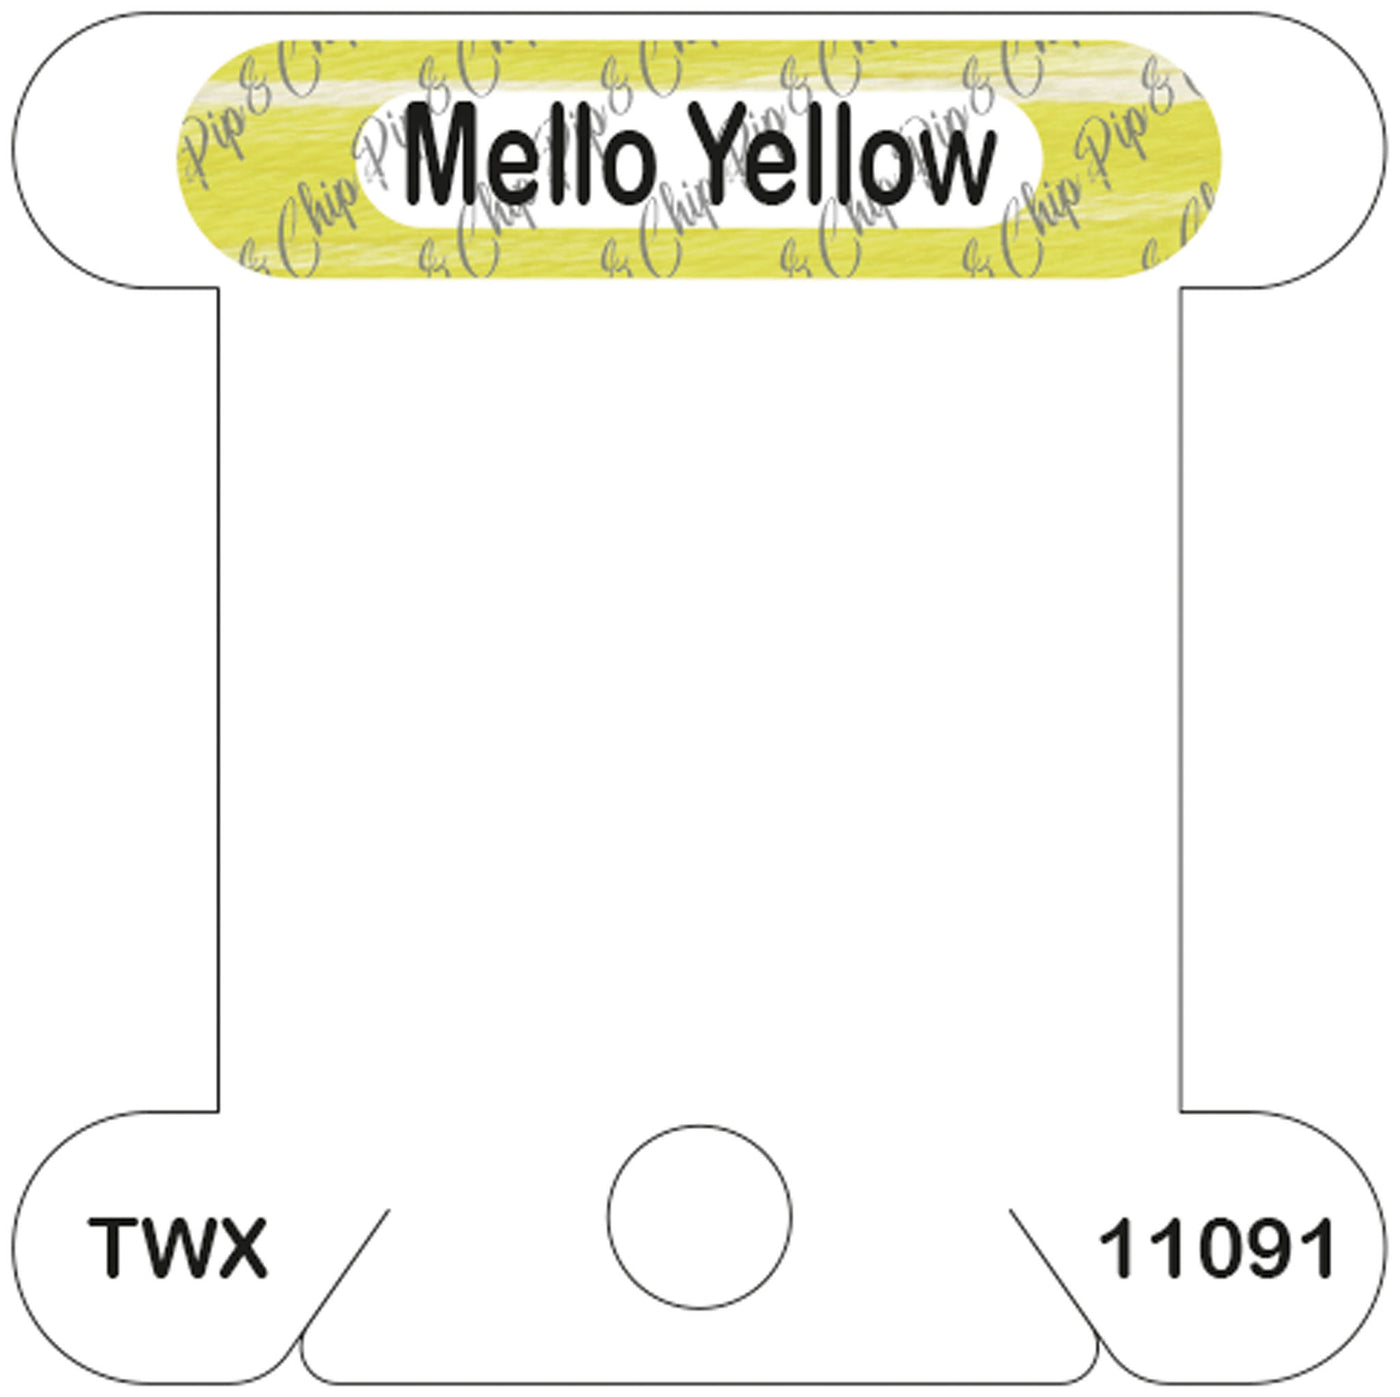 ThreadworX Mello Yellow acrylic bobbin